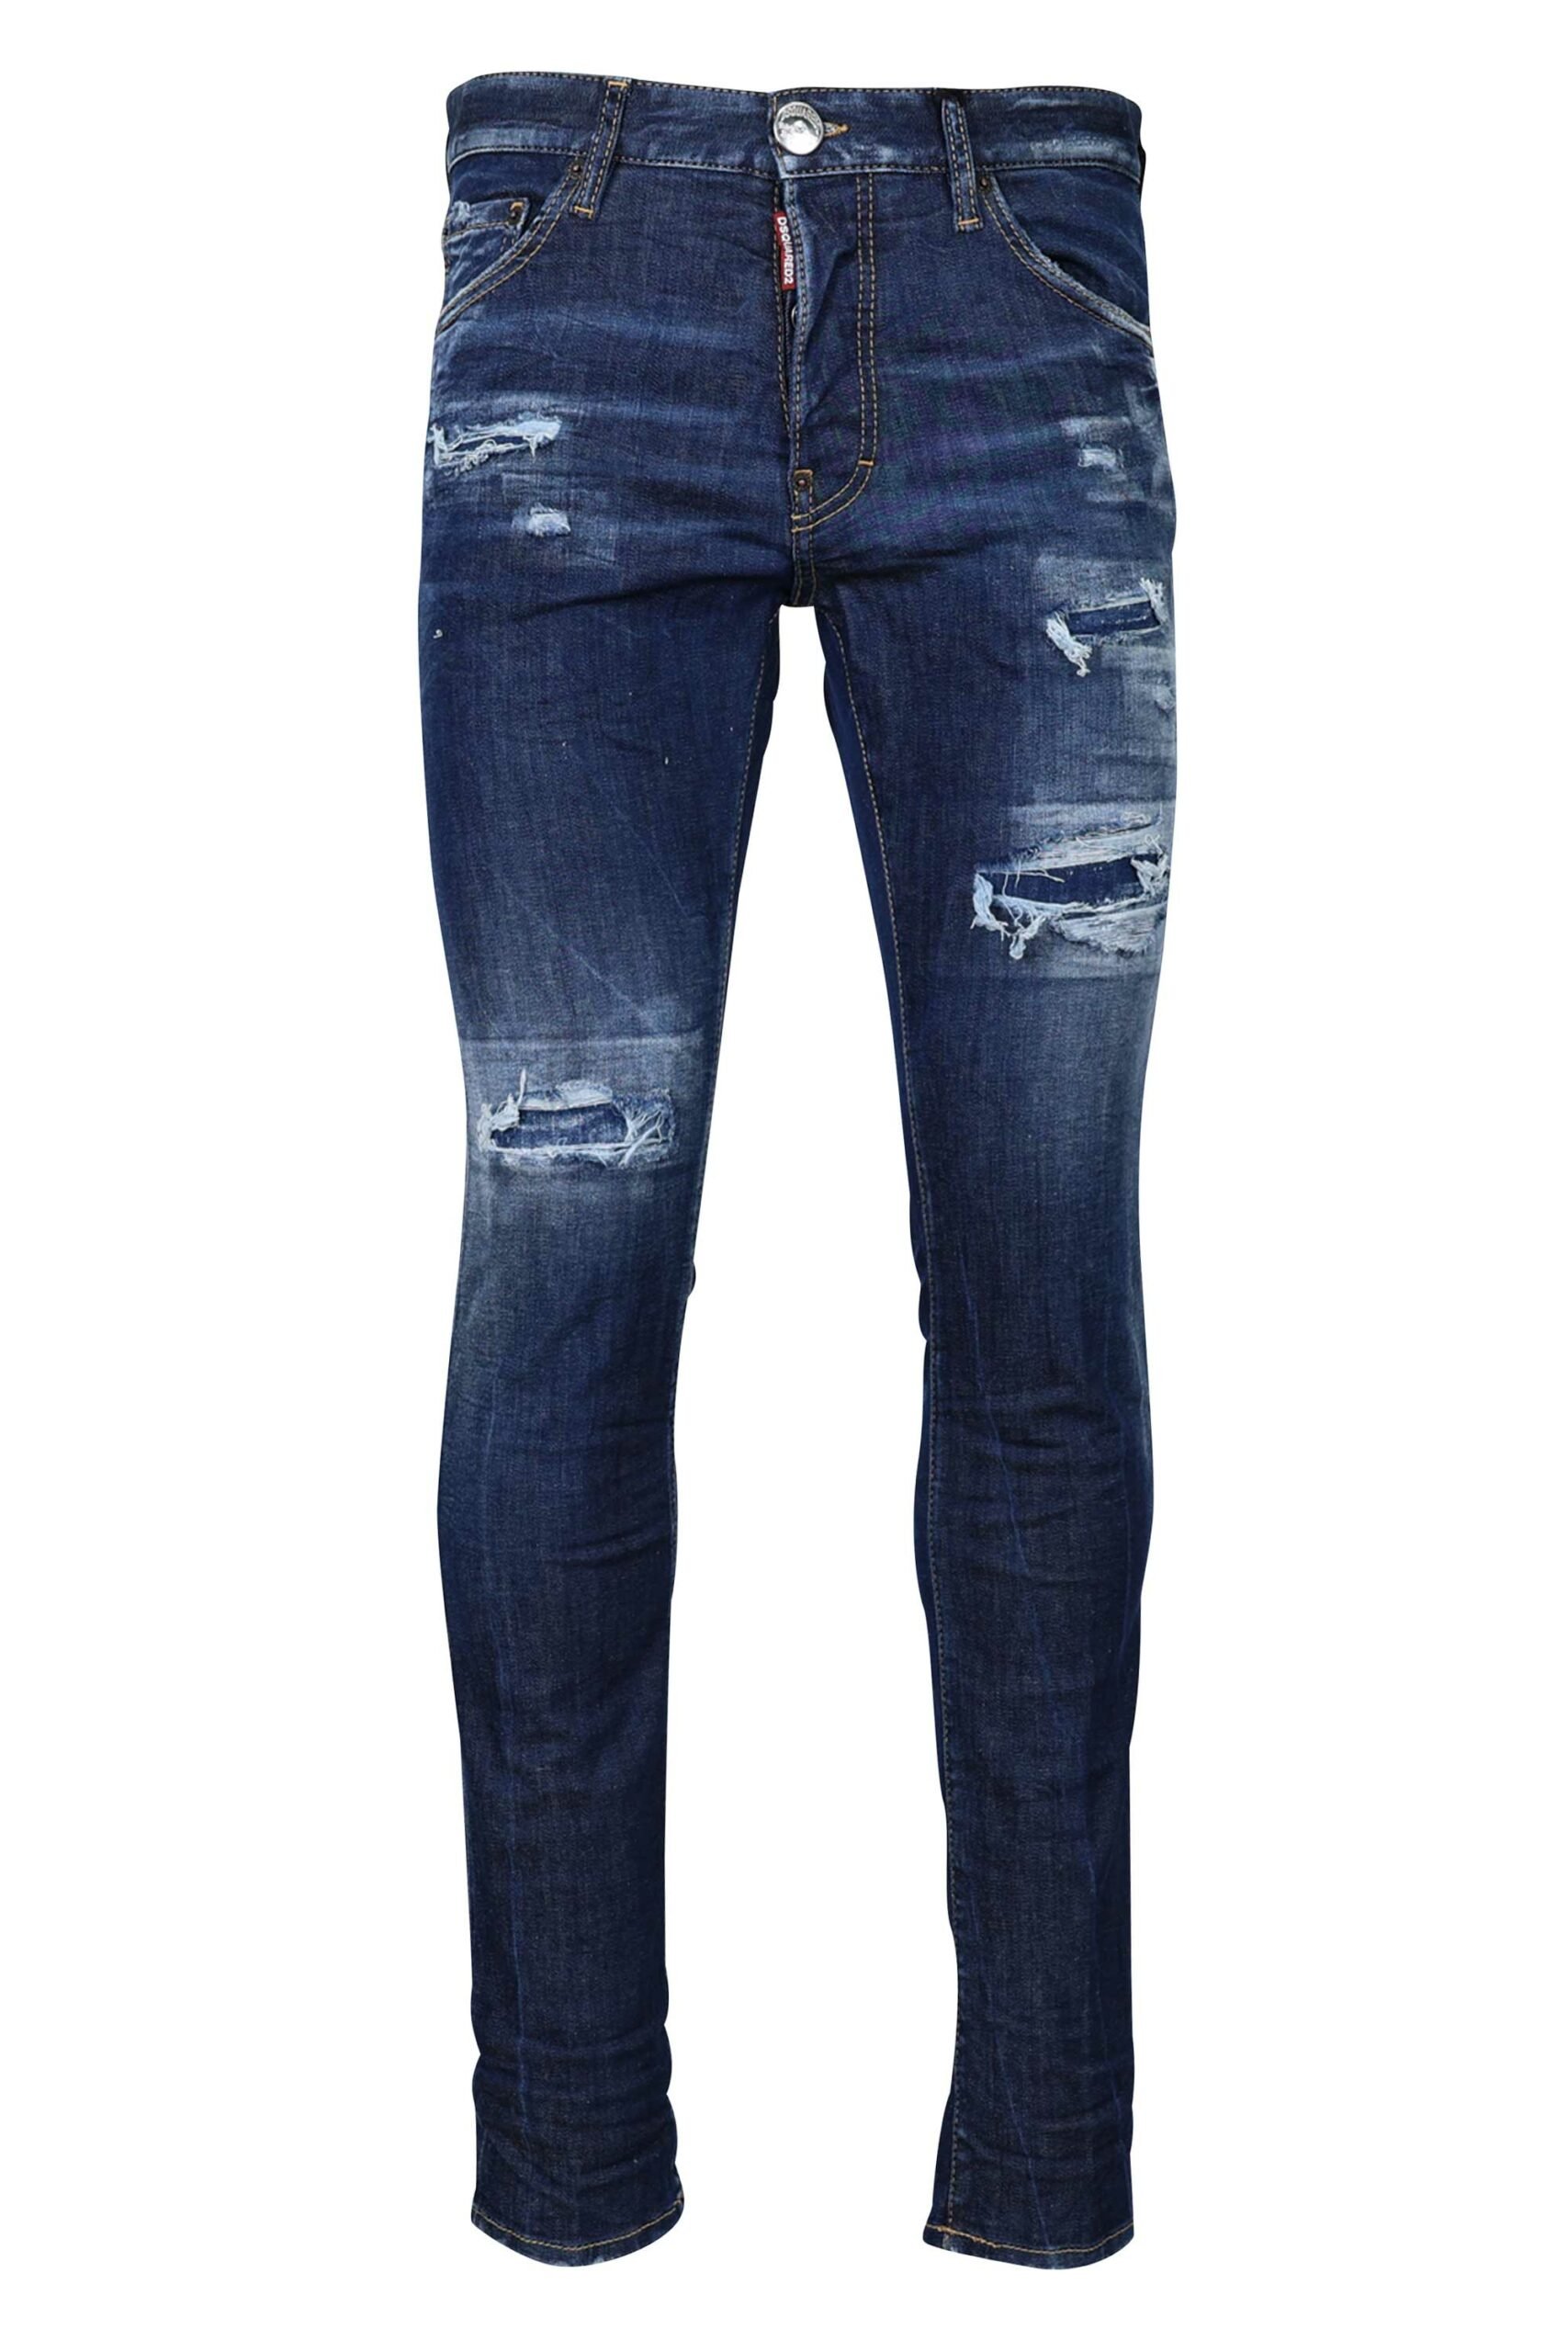 Dsquared2 - Pantalón vaquero azul oscuro cool guy jean - BLS Fashion